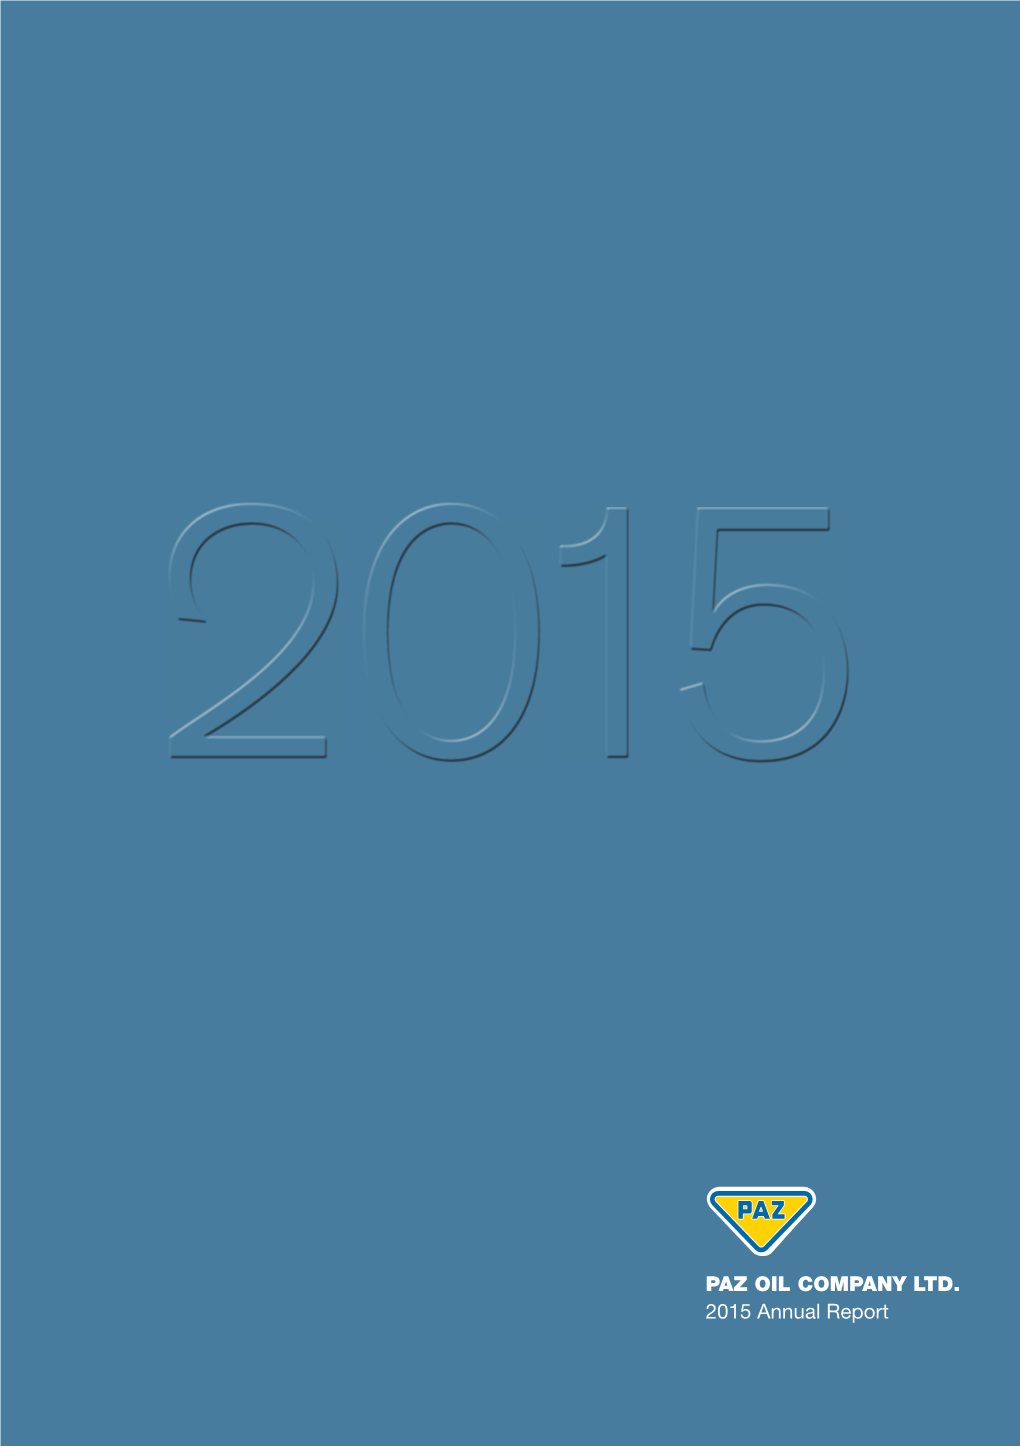 PAZ OIL COMPANY LTD. 2015 Annual Report